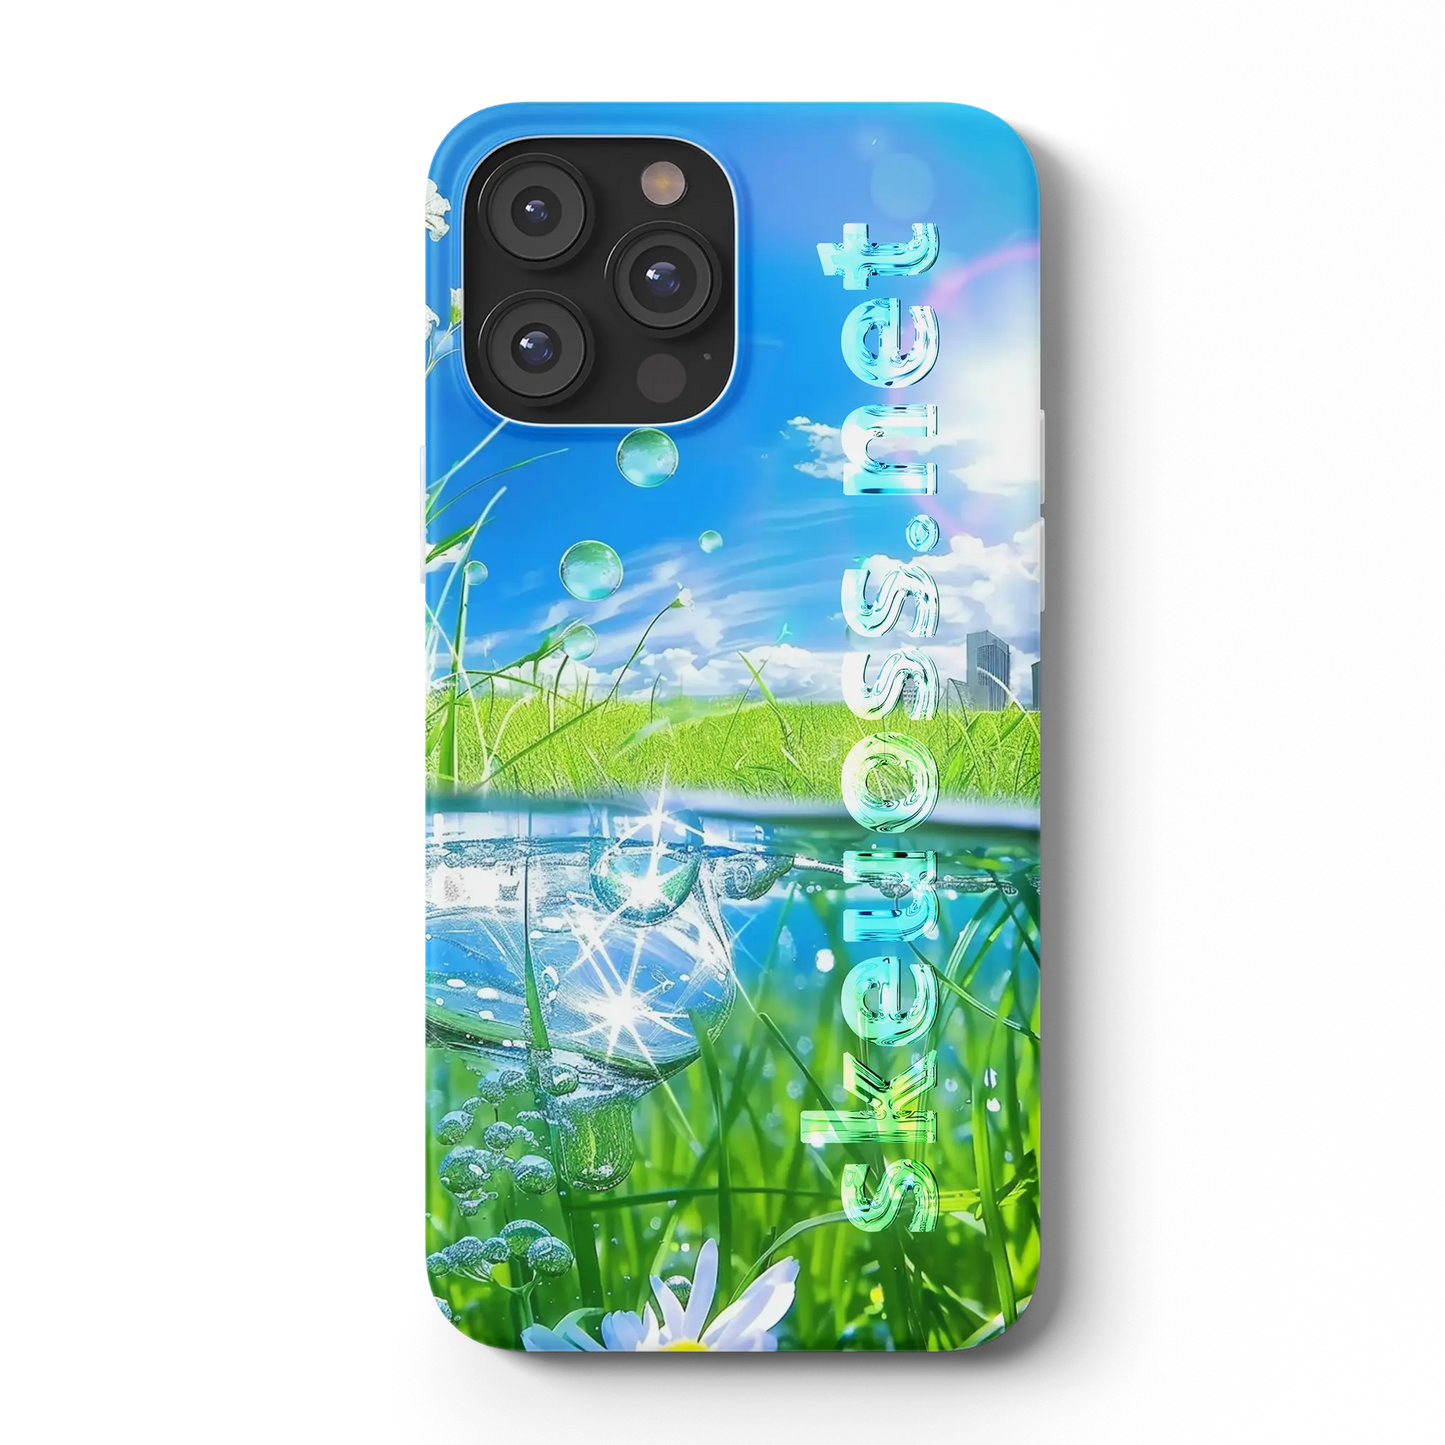 Frutiger Aero iPhone case - Design 639